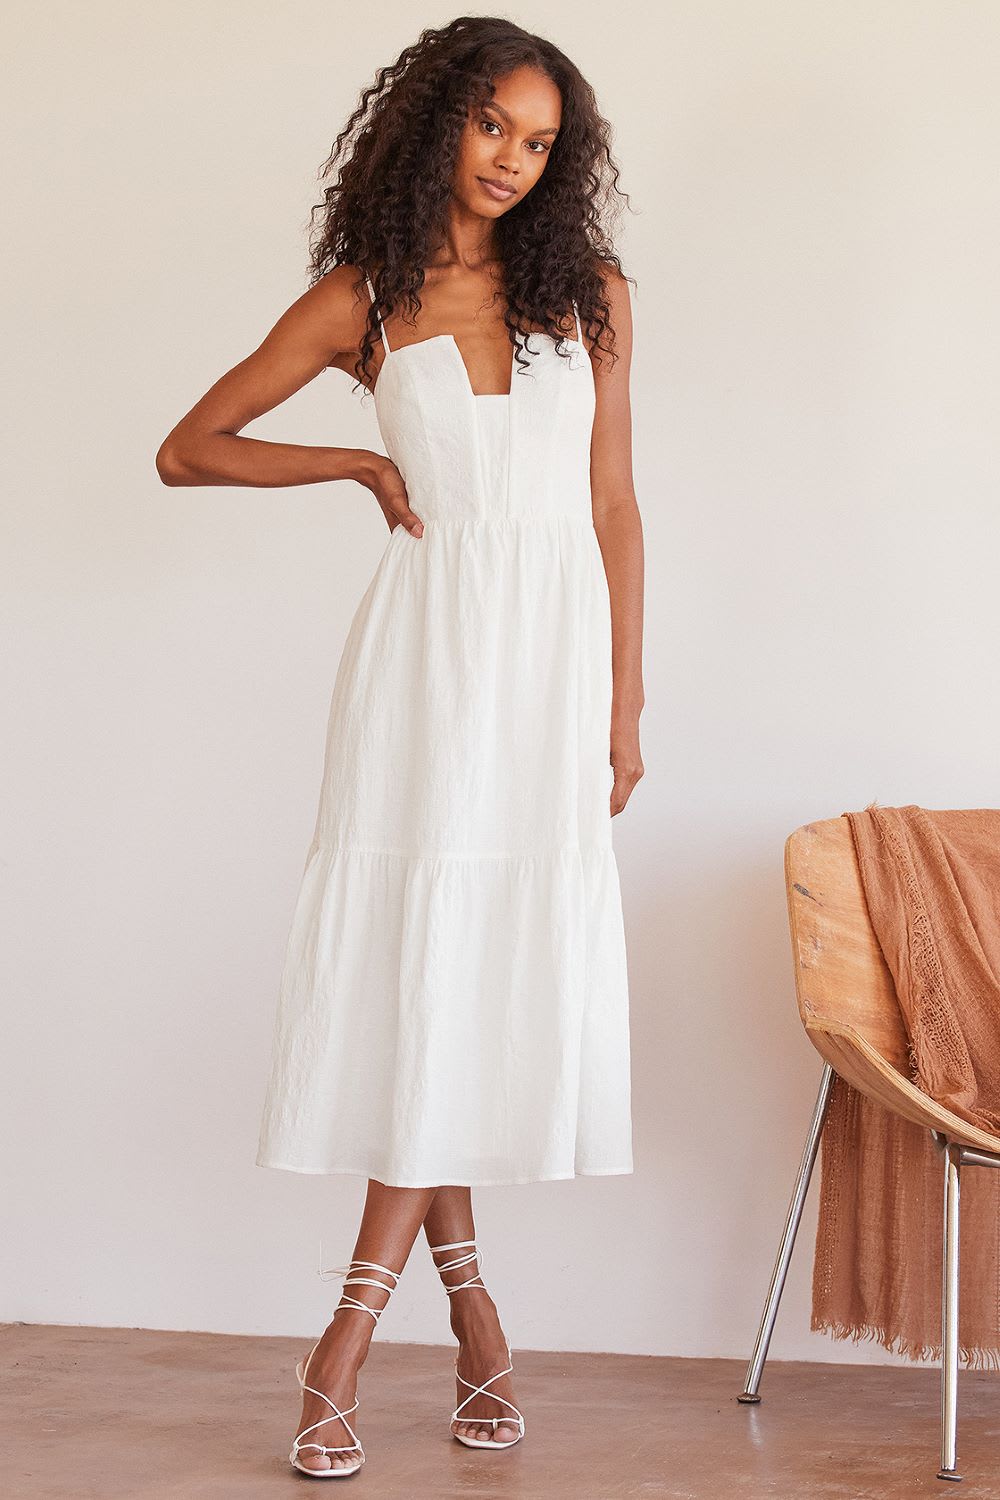 Buy Cotton Dresses Online|Summer Cotton Dresses|Indian dresses – The  Phoenix Company